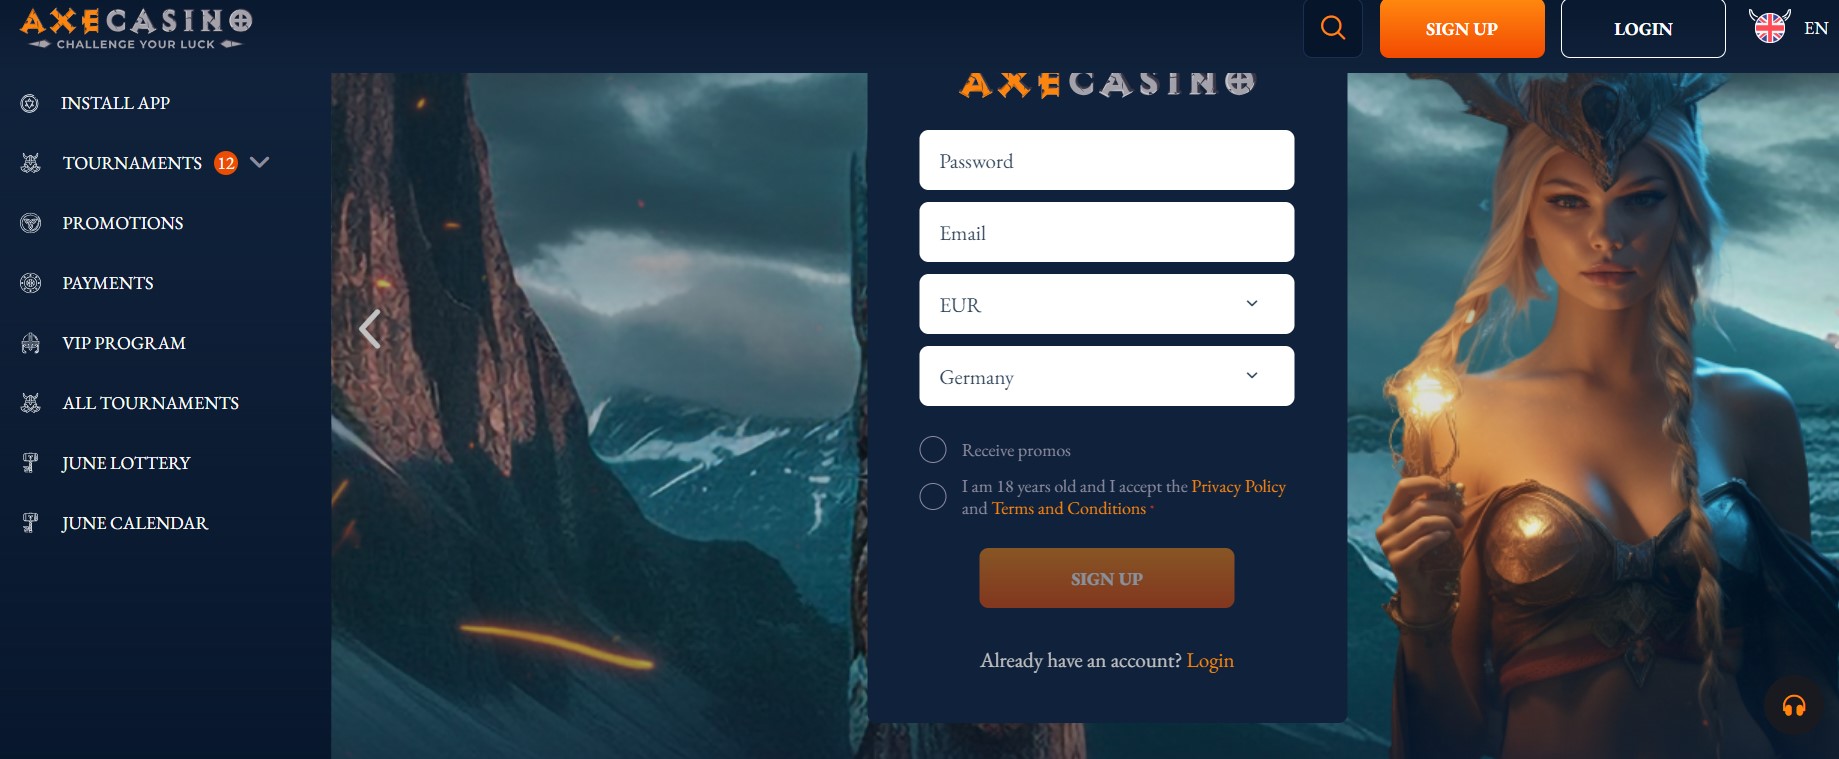 Axe Casino Homepage